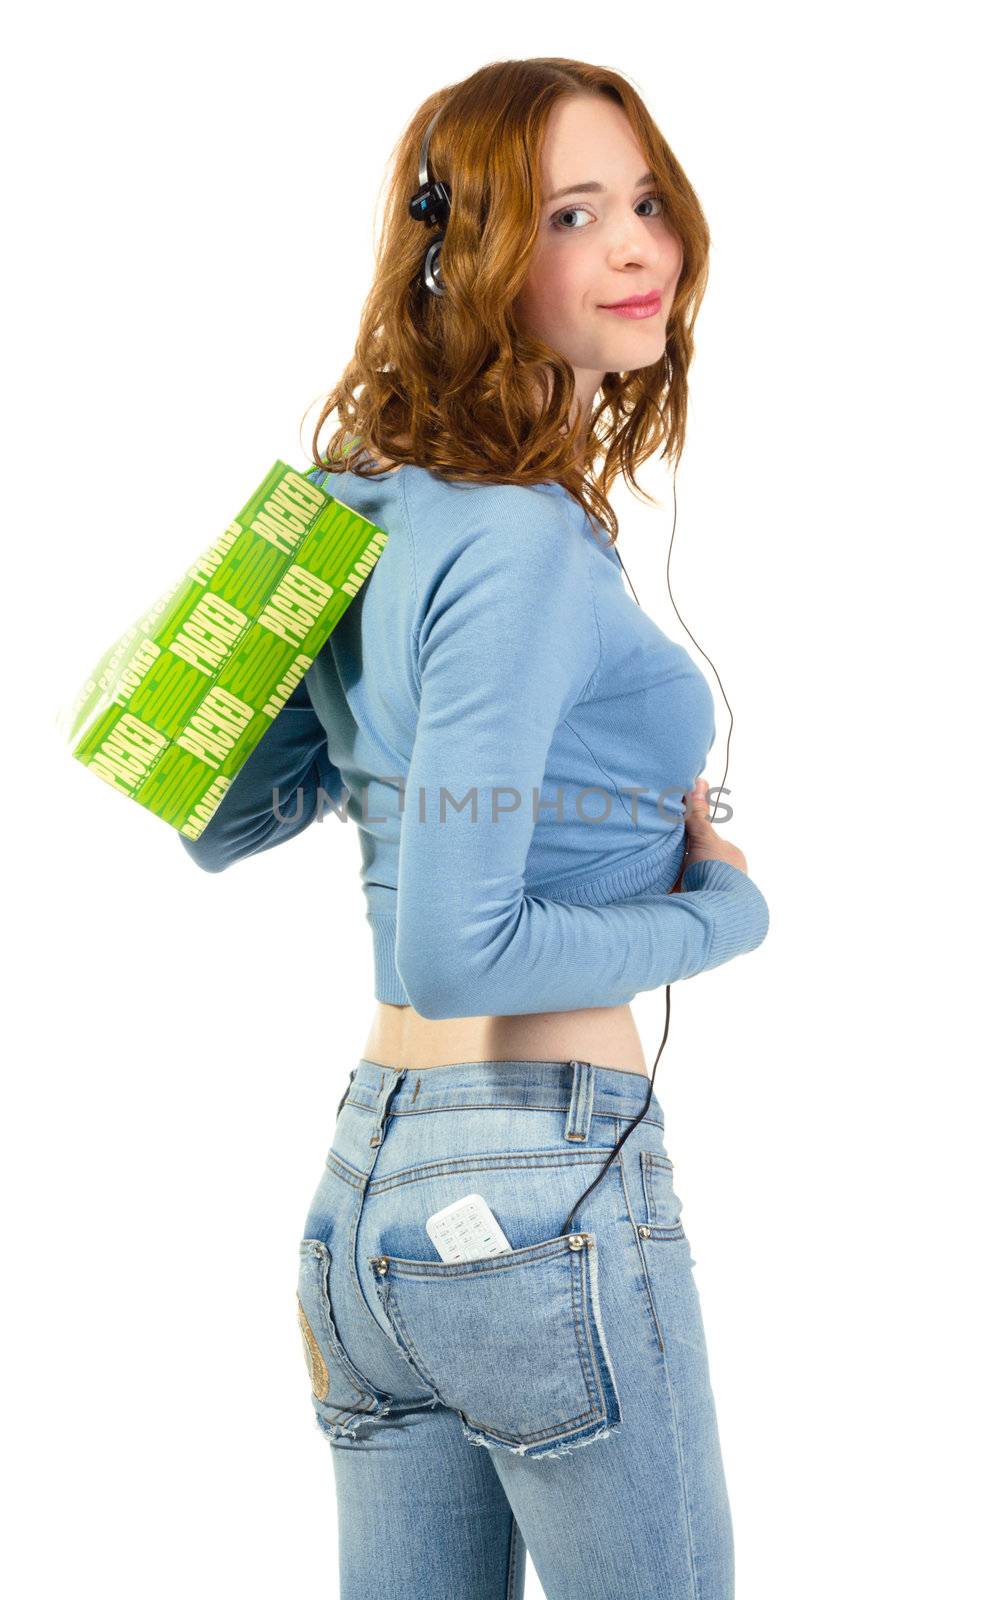 Shopping girl, isolated on white background